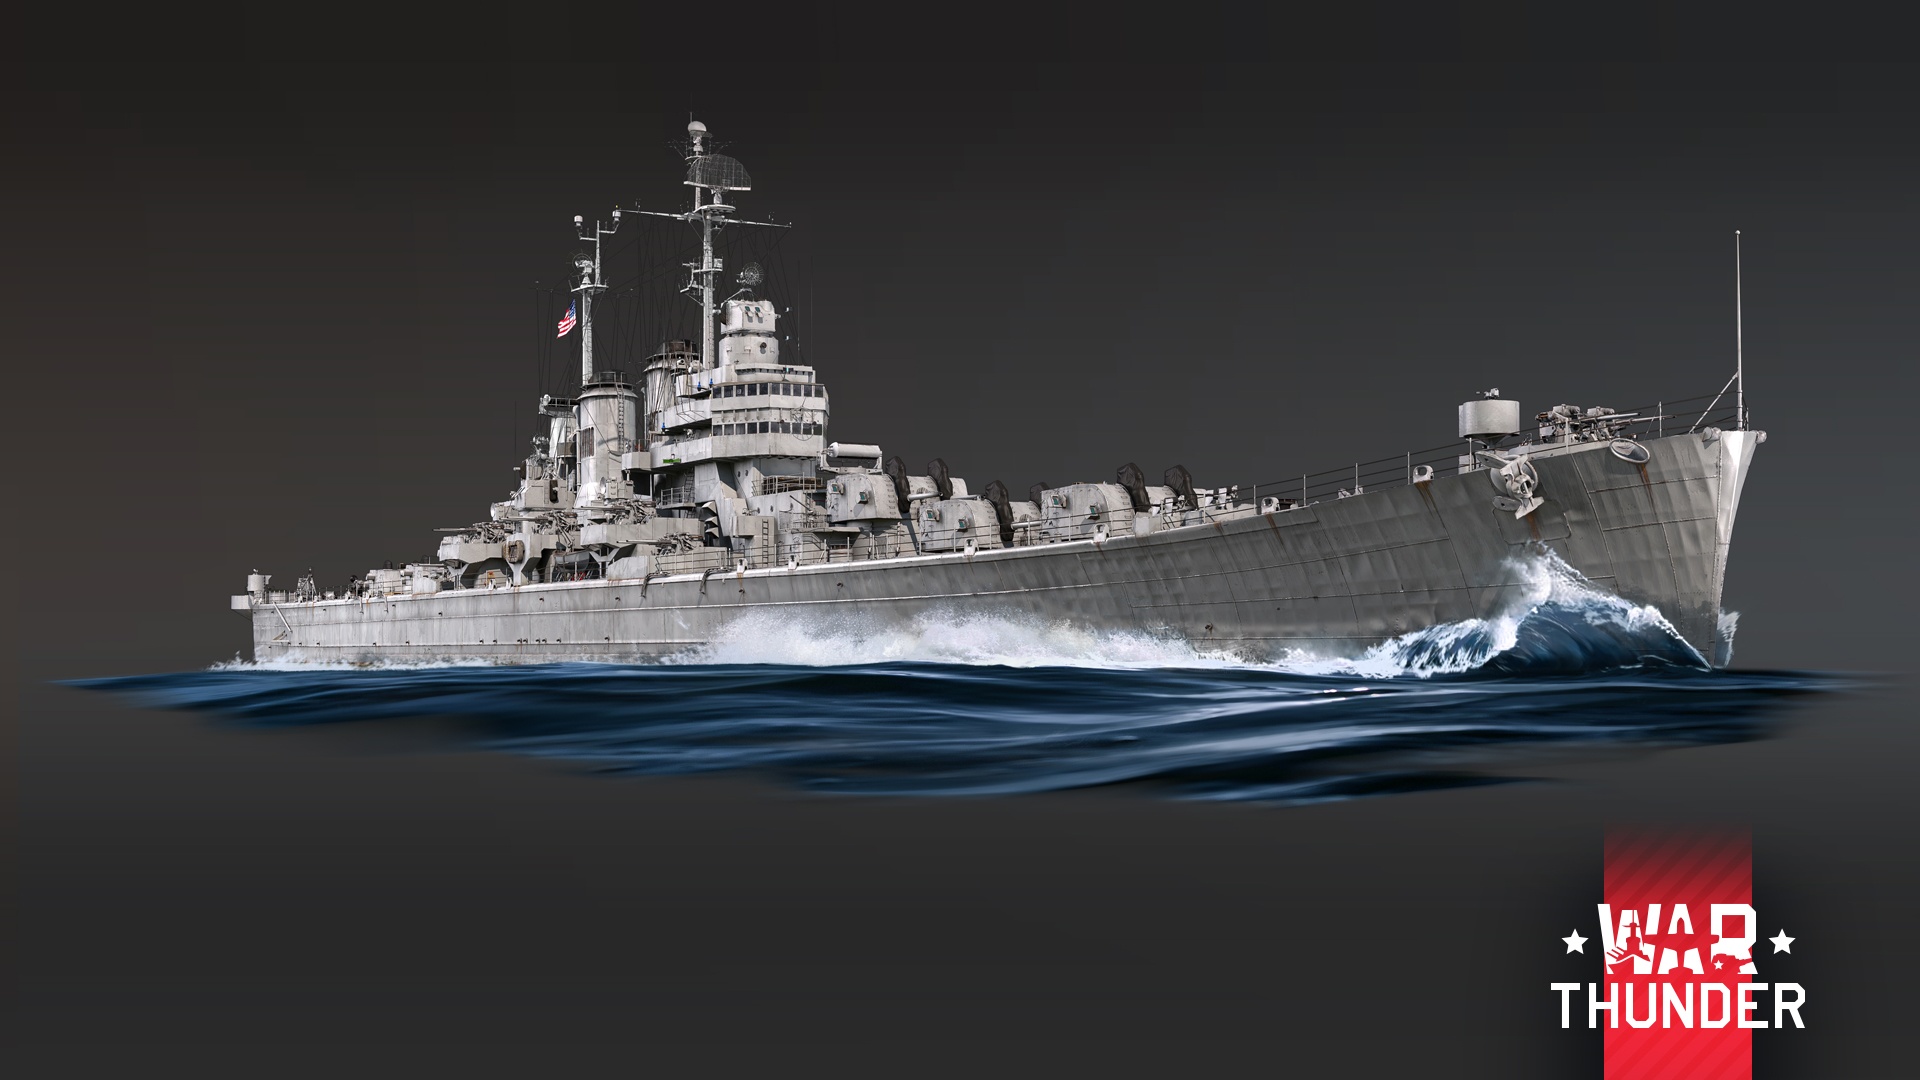 (Этот легкий крейсер гораздо лучше бронирован и вооружен, чем обычно для кораблей этого типа.)